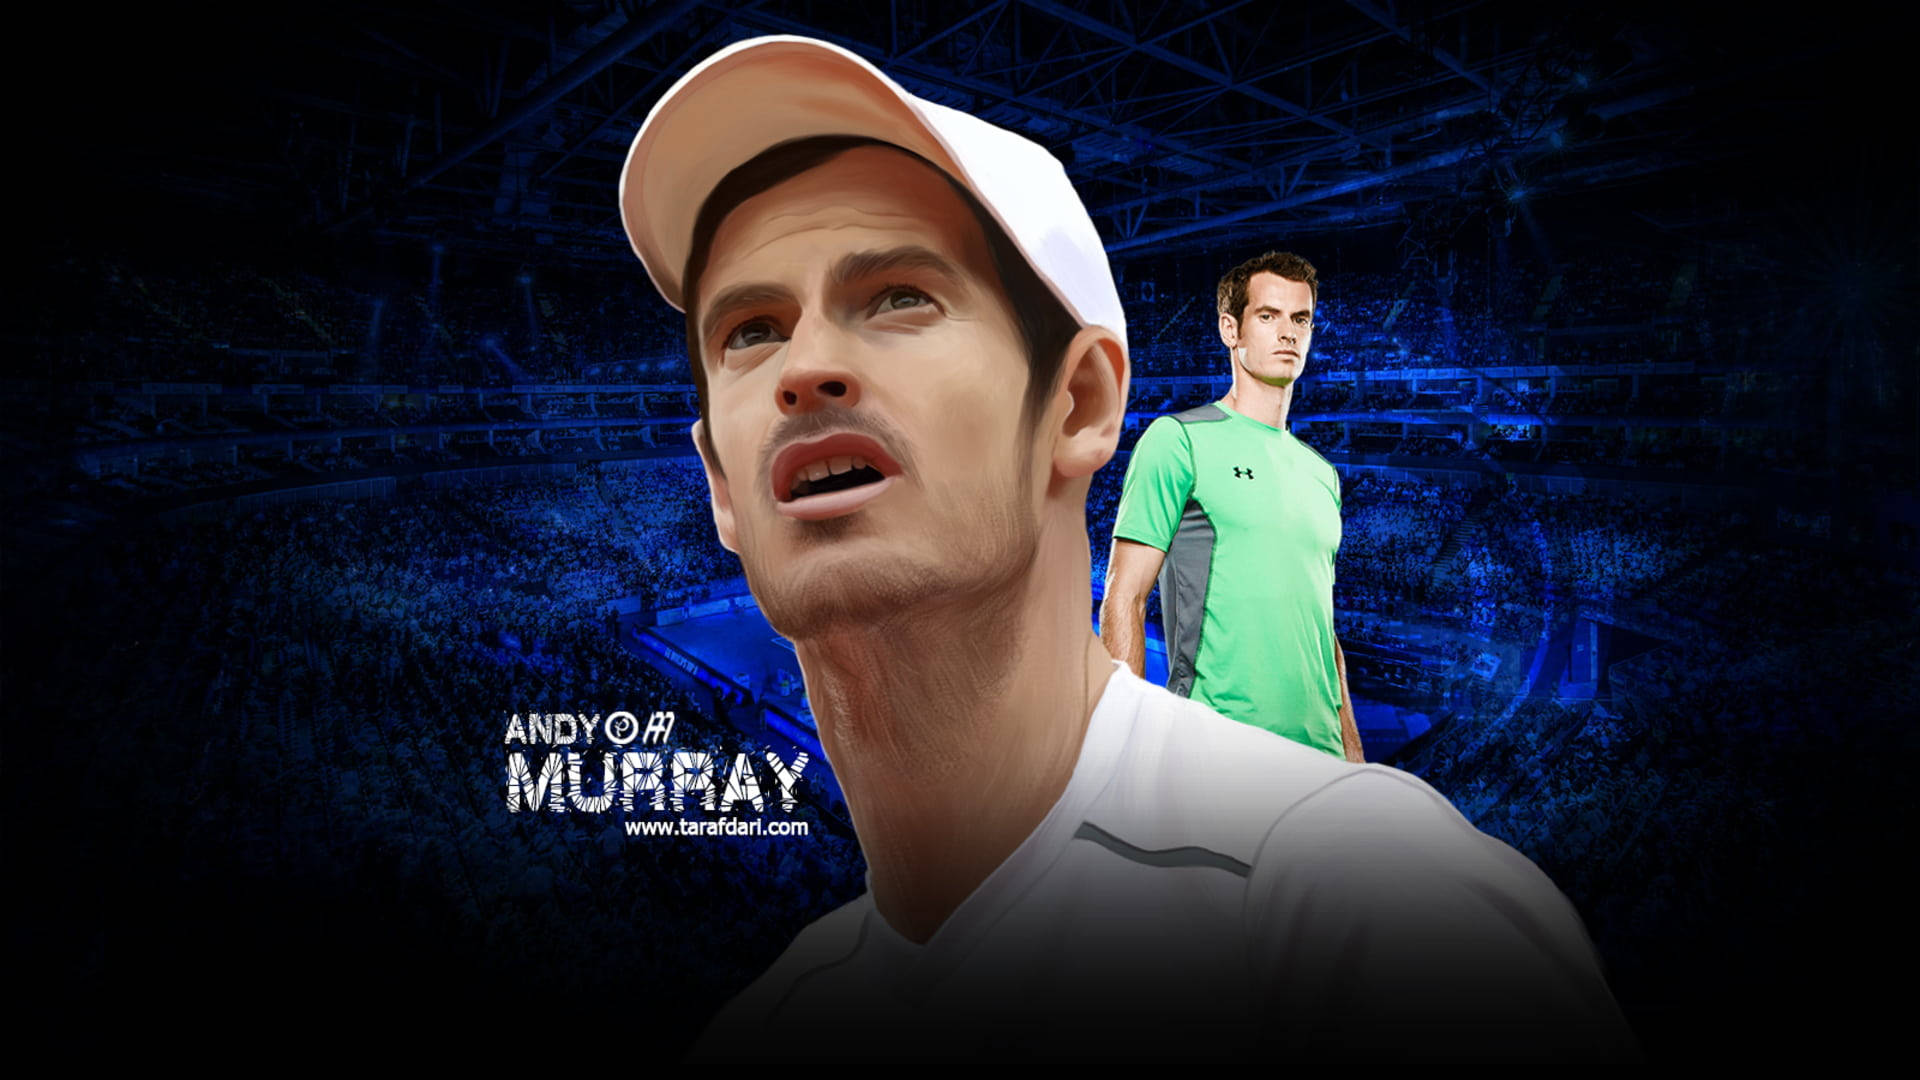 Artigolegal De Fã Do Andy Murray. Papel de Parede